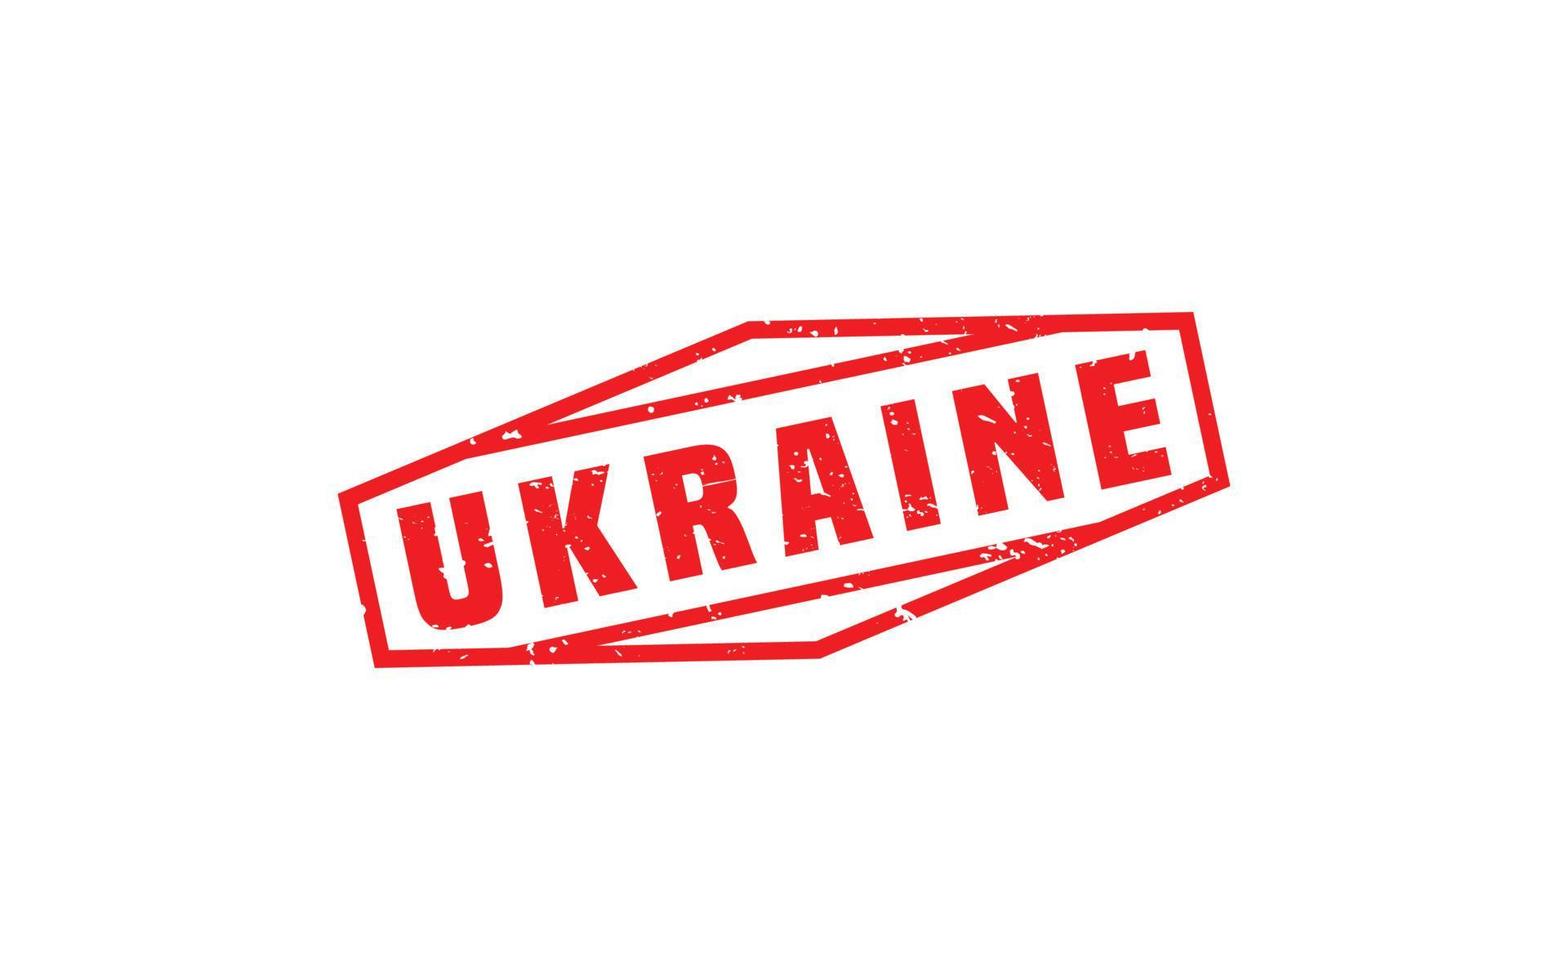 ukraina sudd stämpel med grunge stil på vit bakgrund vektor